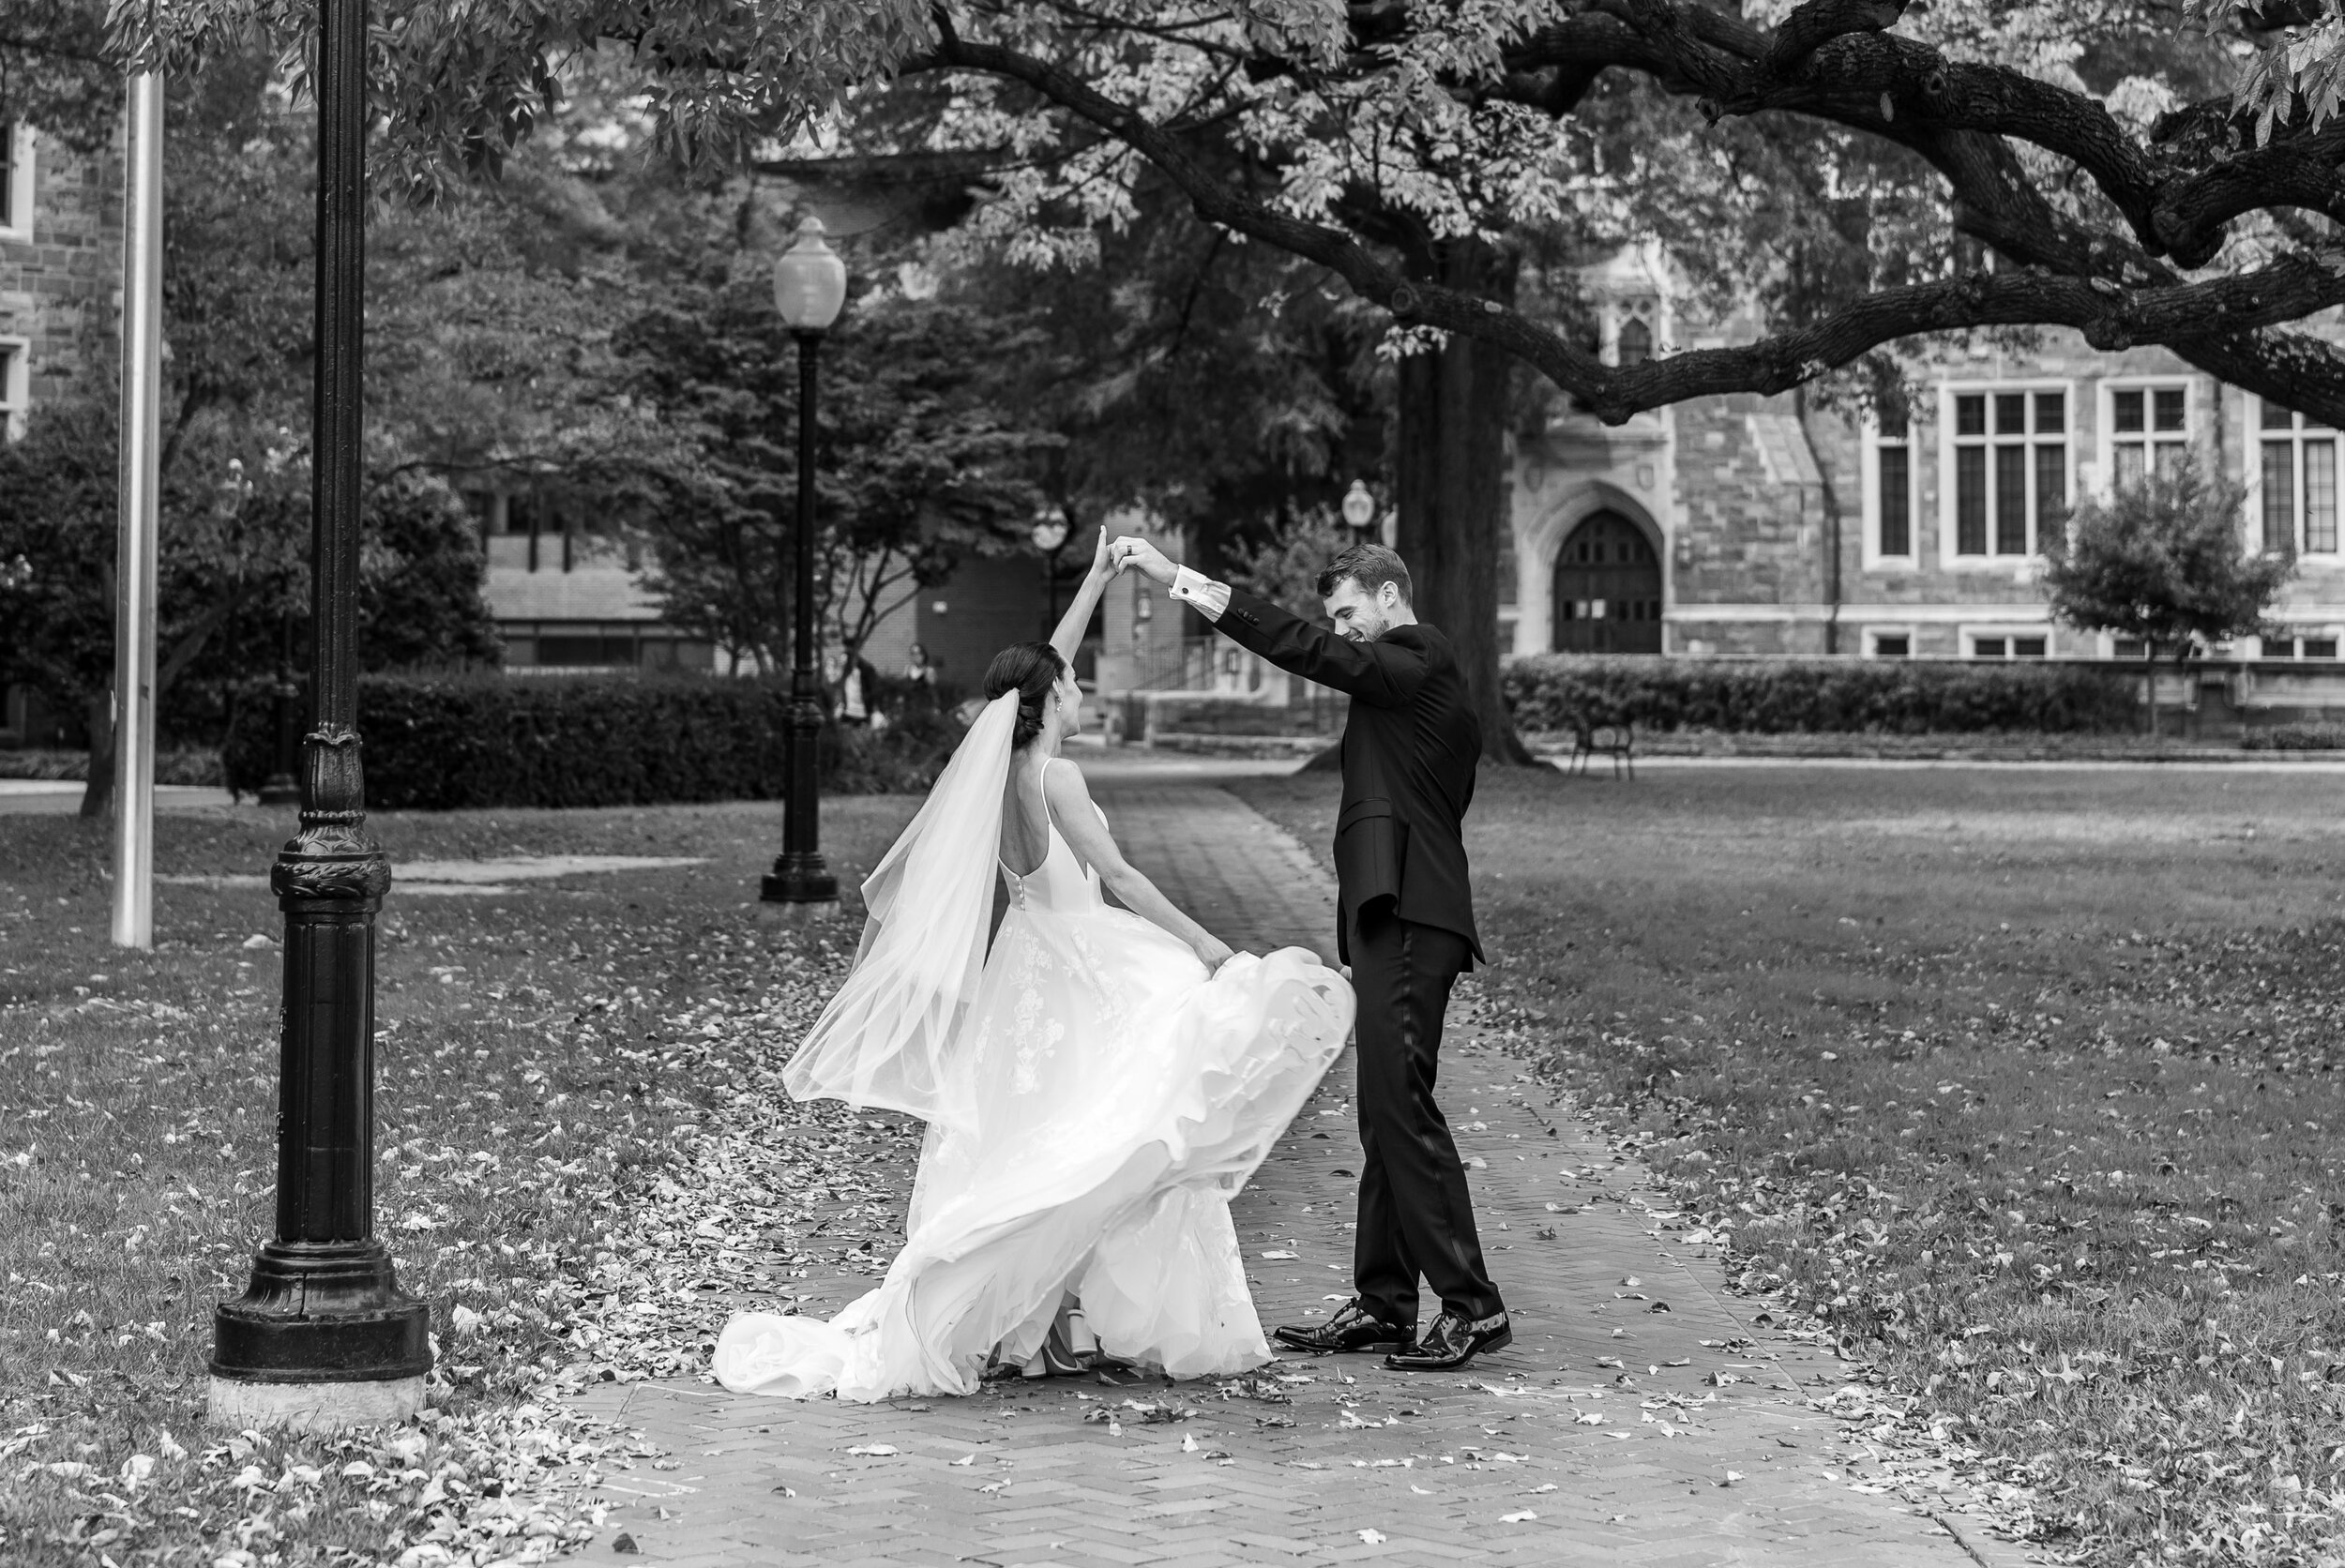 Groom twirling bride on sidewalks at Georgetown University